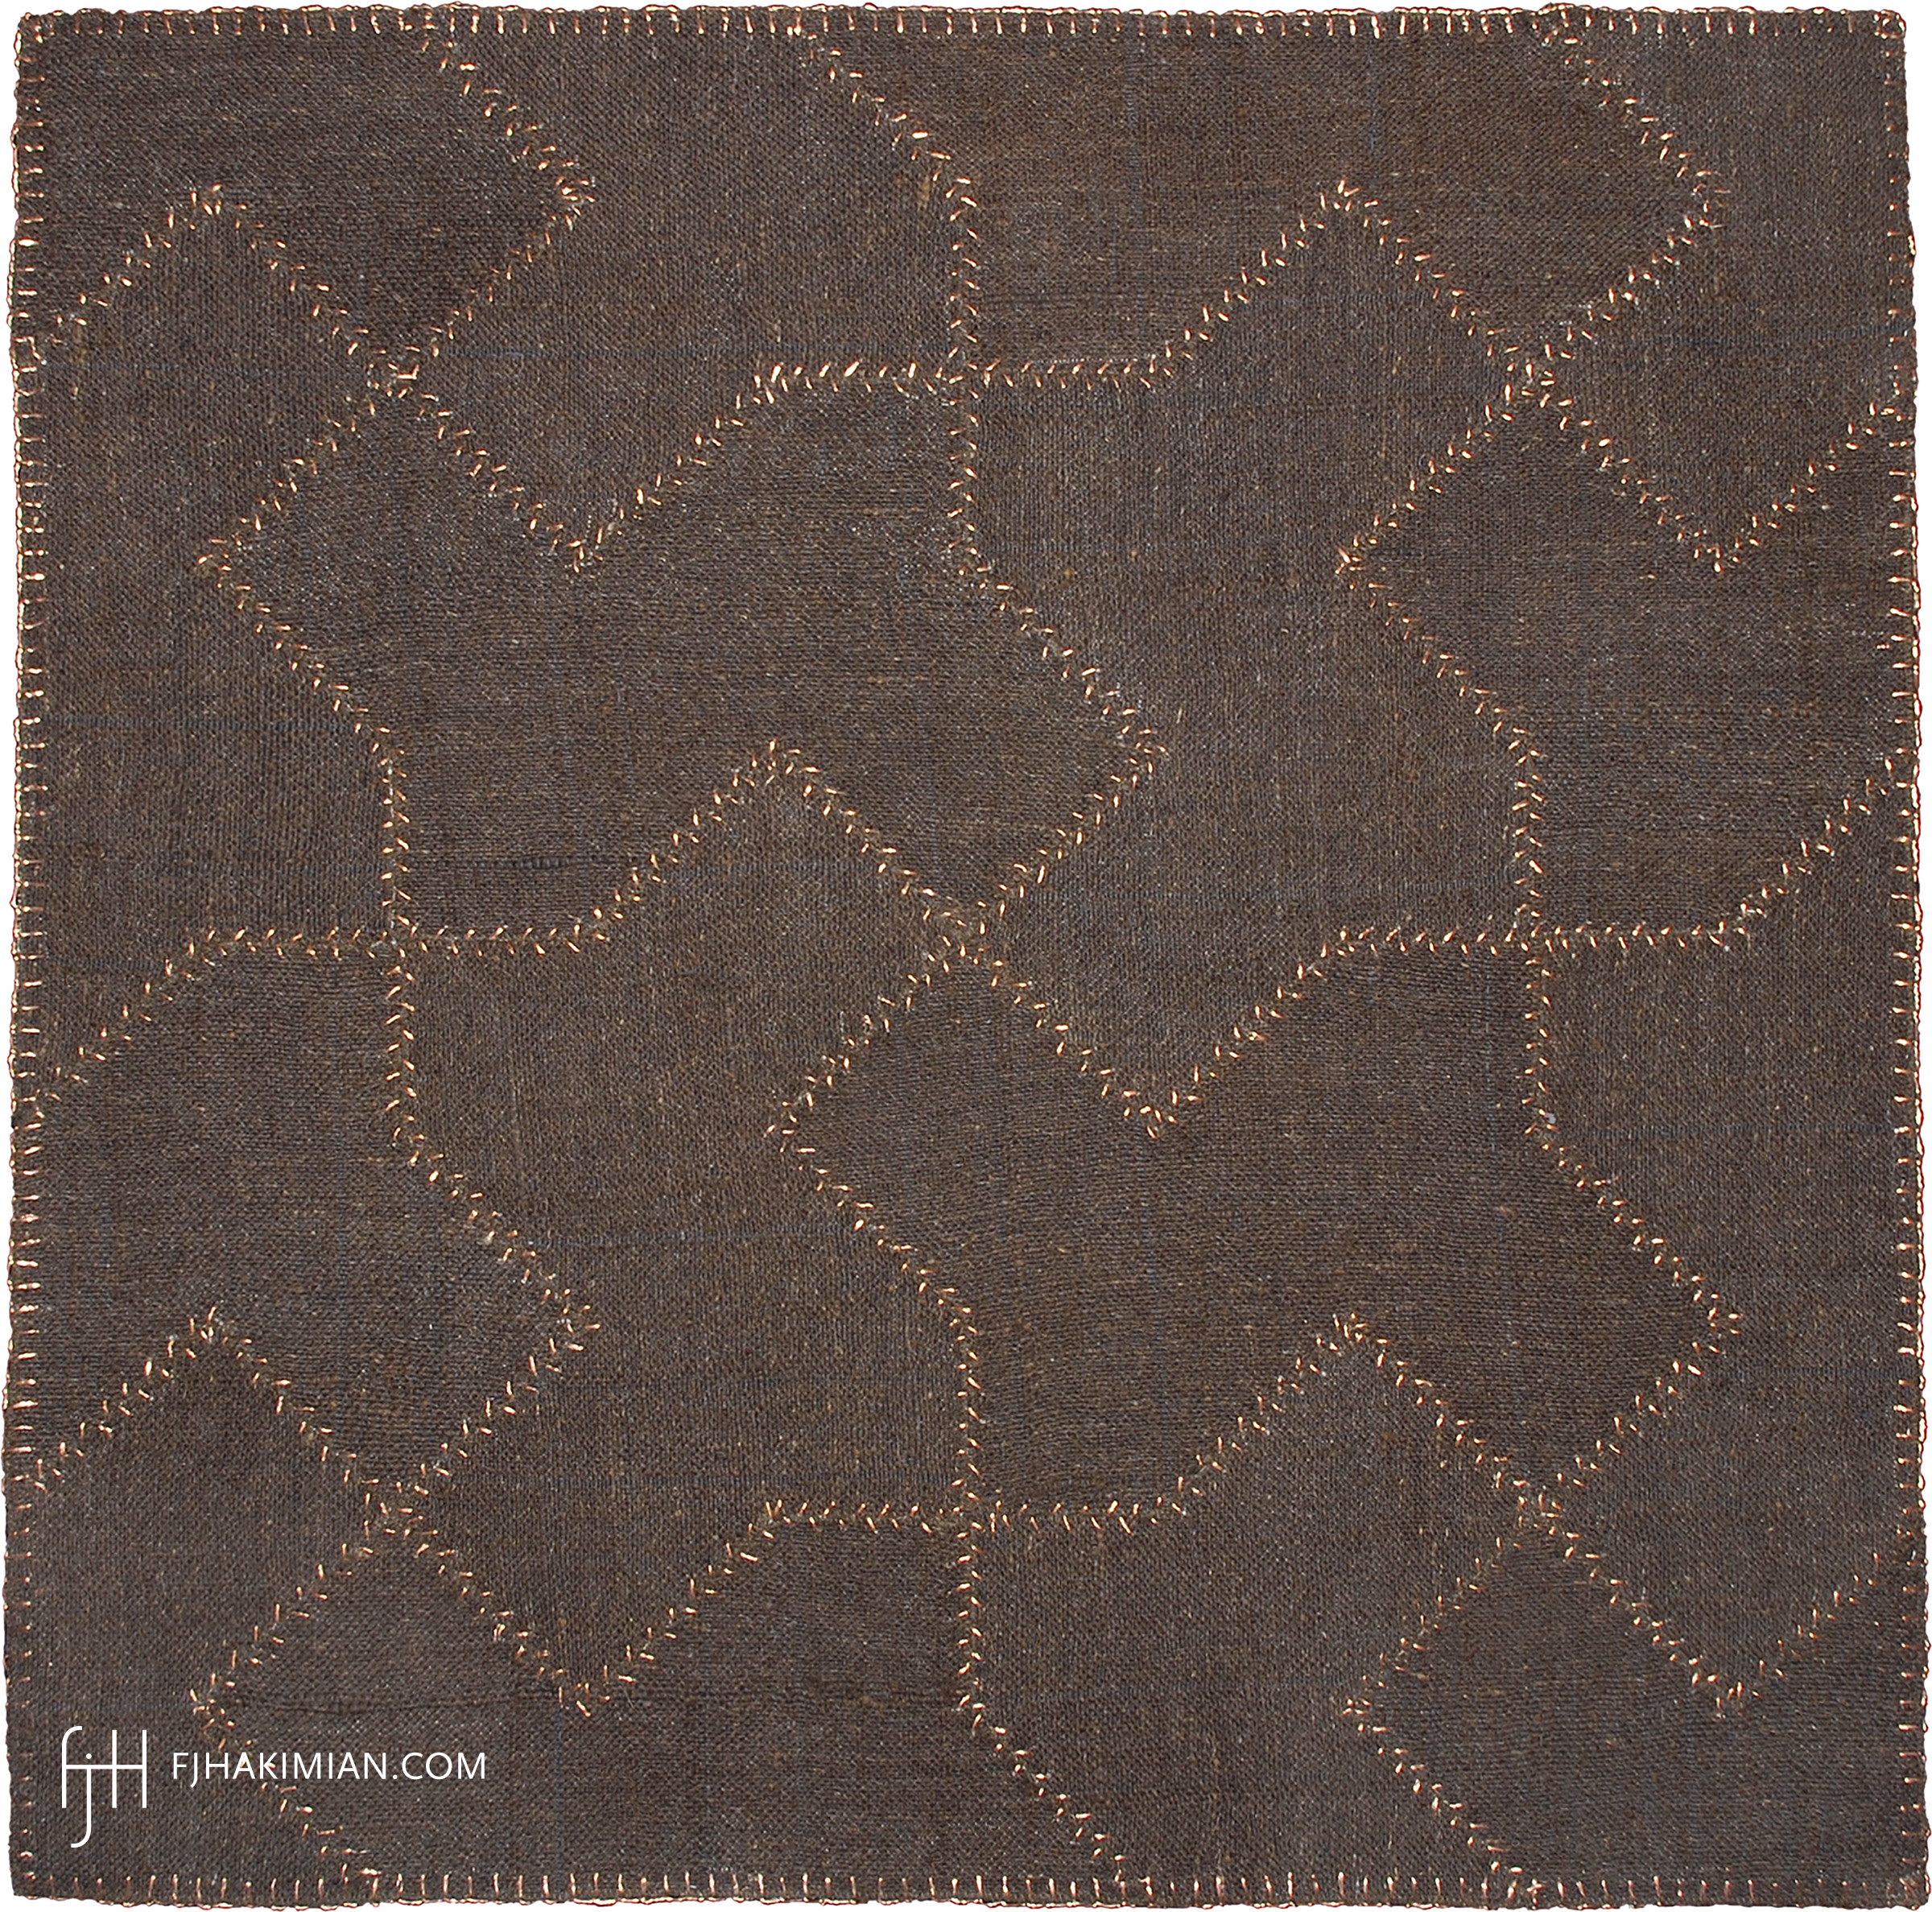 FJ Hakimian | 27641 | Custom Carpet